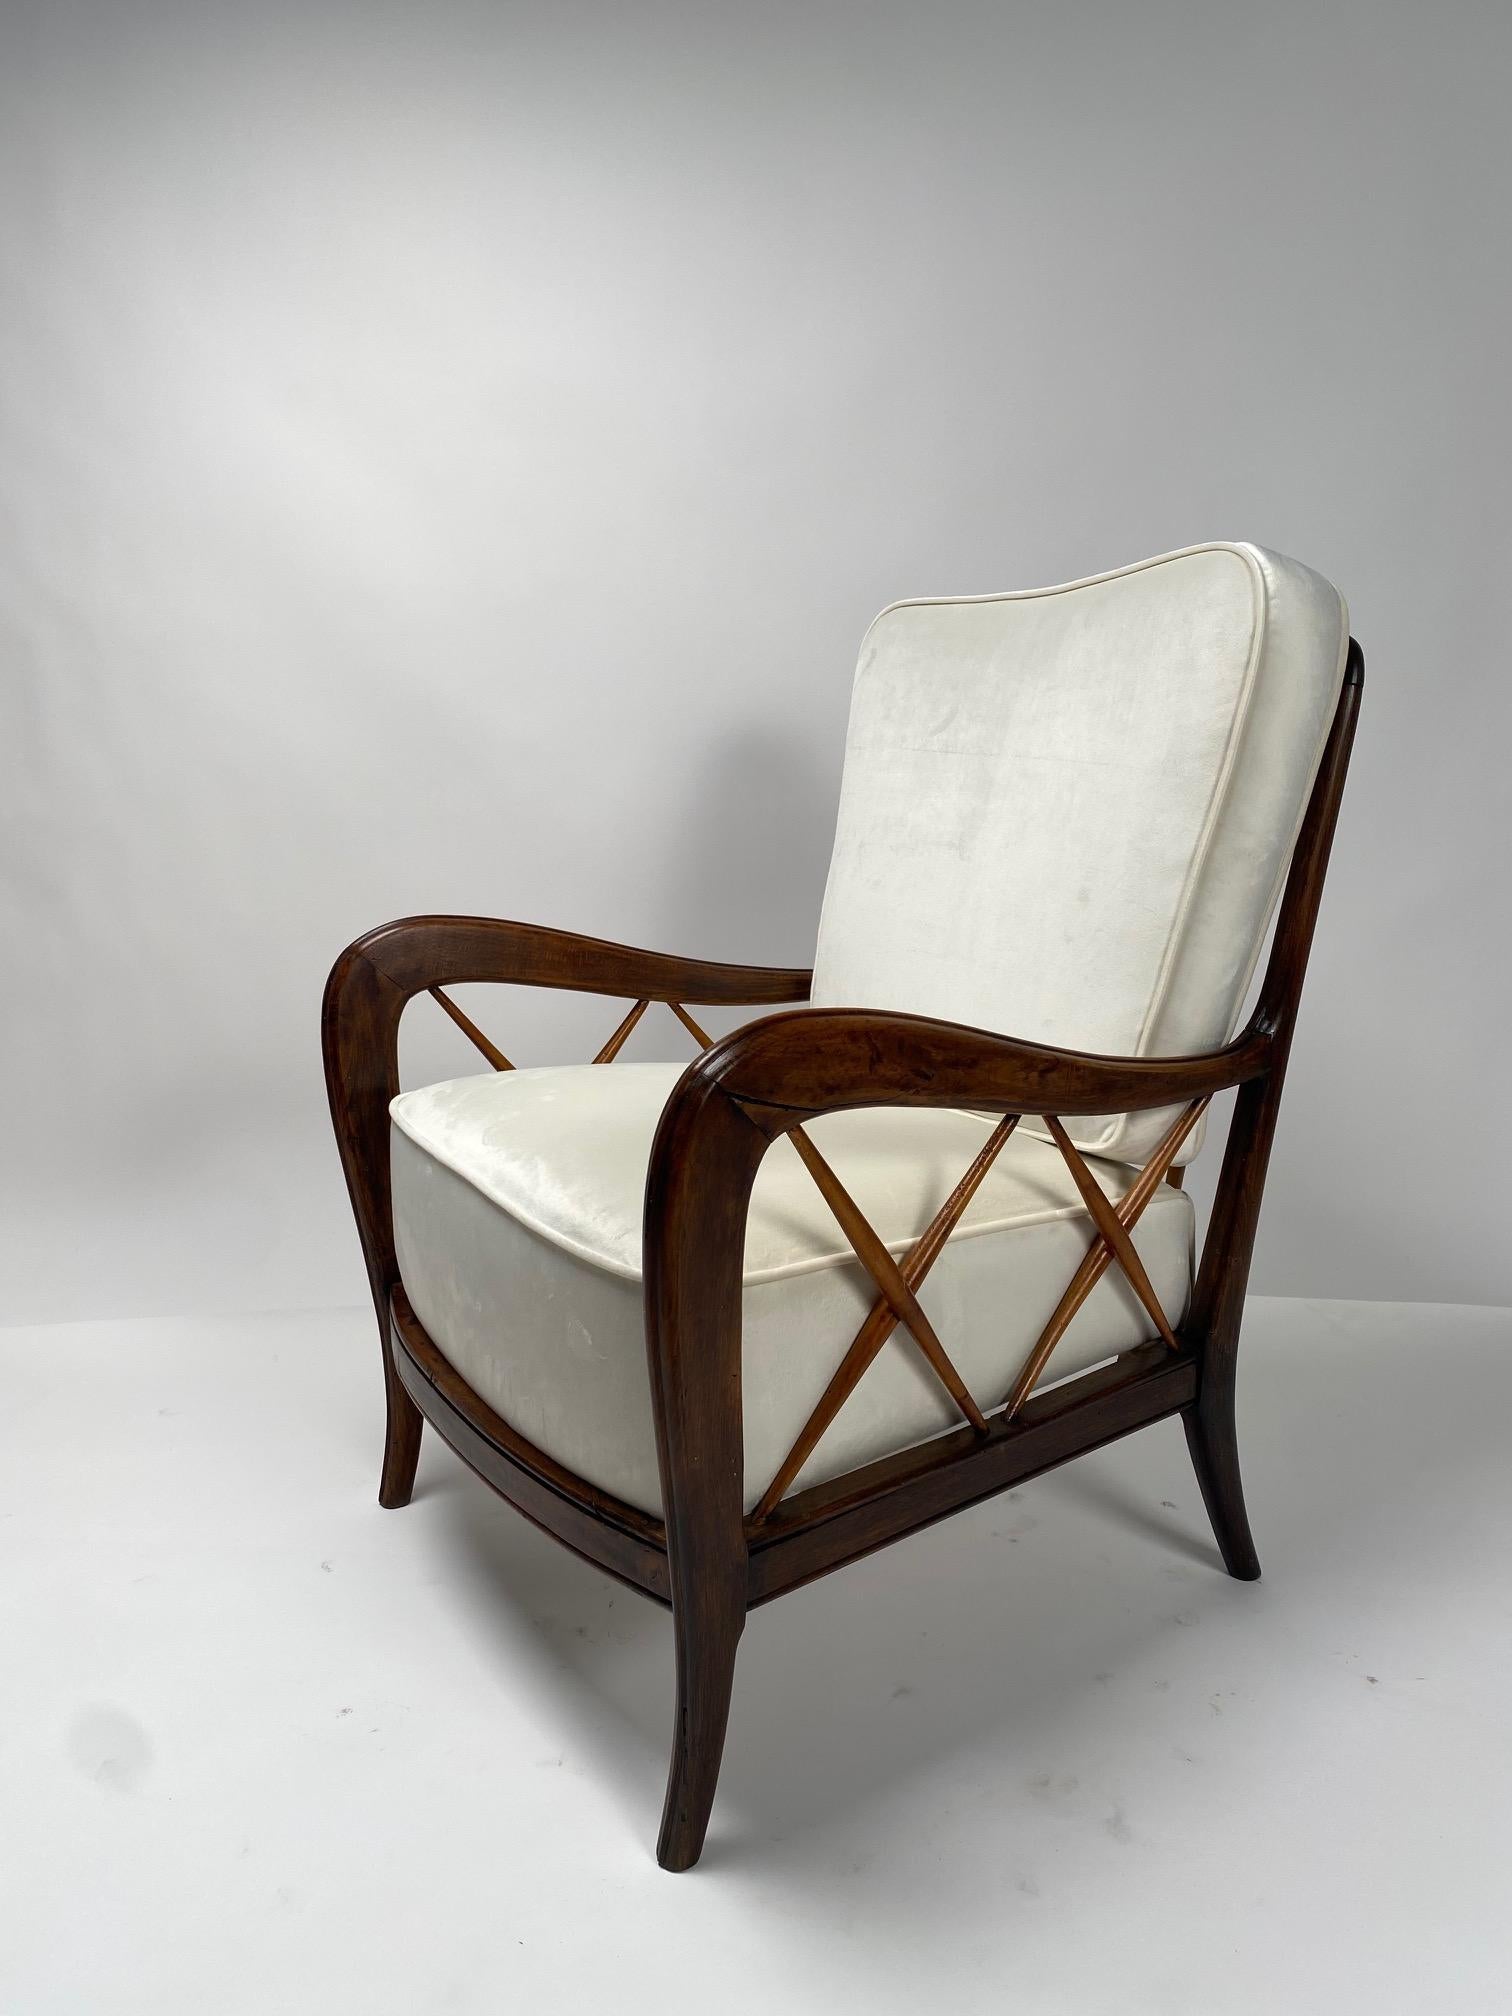 Paar 1950er Sessel von Paolo Buffa, Italien, 1950er Jahre

Eines der ikonischsten und repräsentativsten Modelle des italienischen Designs der 1950er Jahre, Holzstruktur und Kissen kürzlich mit weißem Samt neu bezogen. Es handelt sich um elegante und